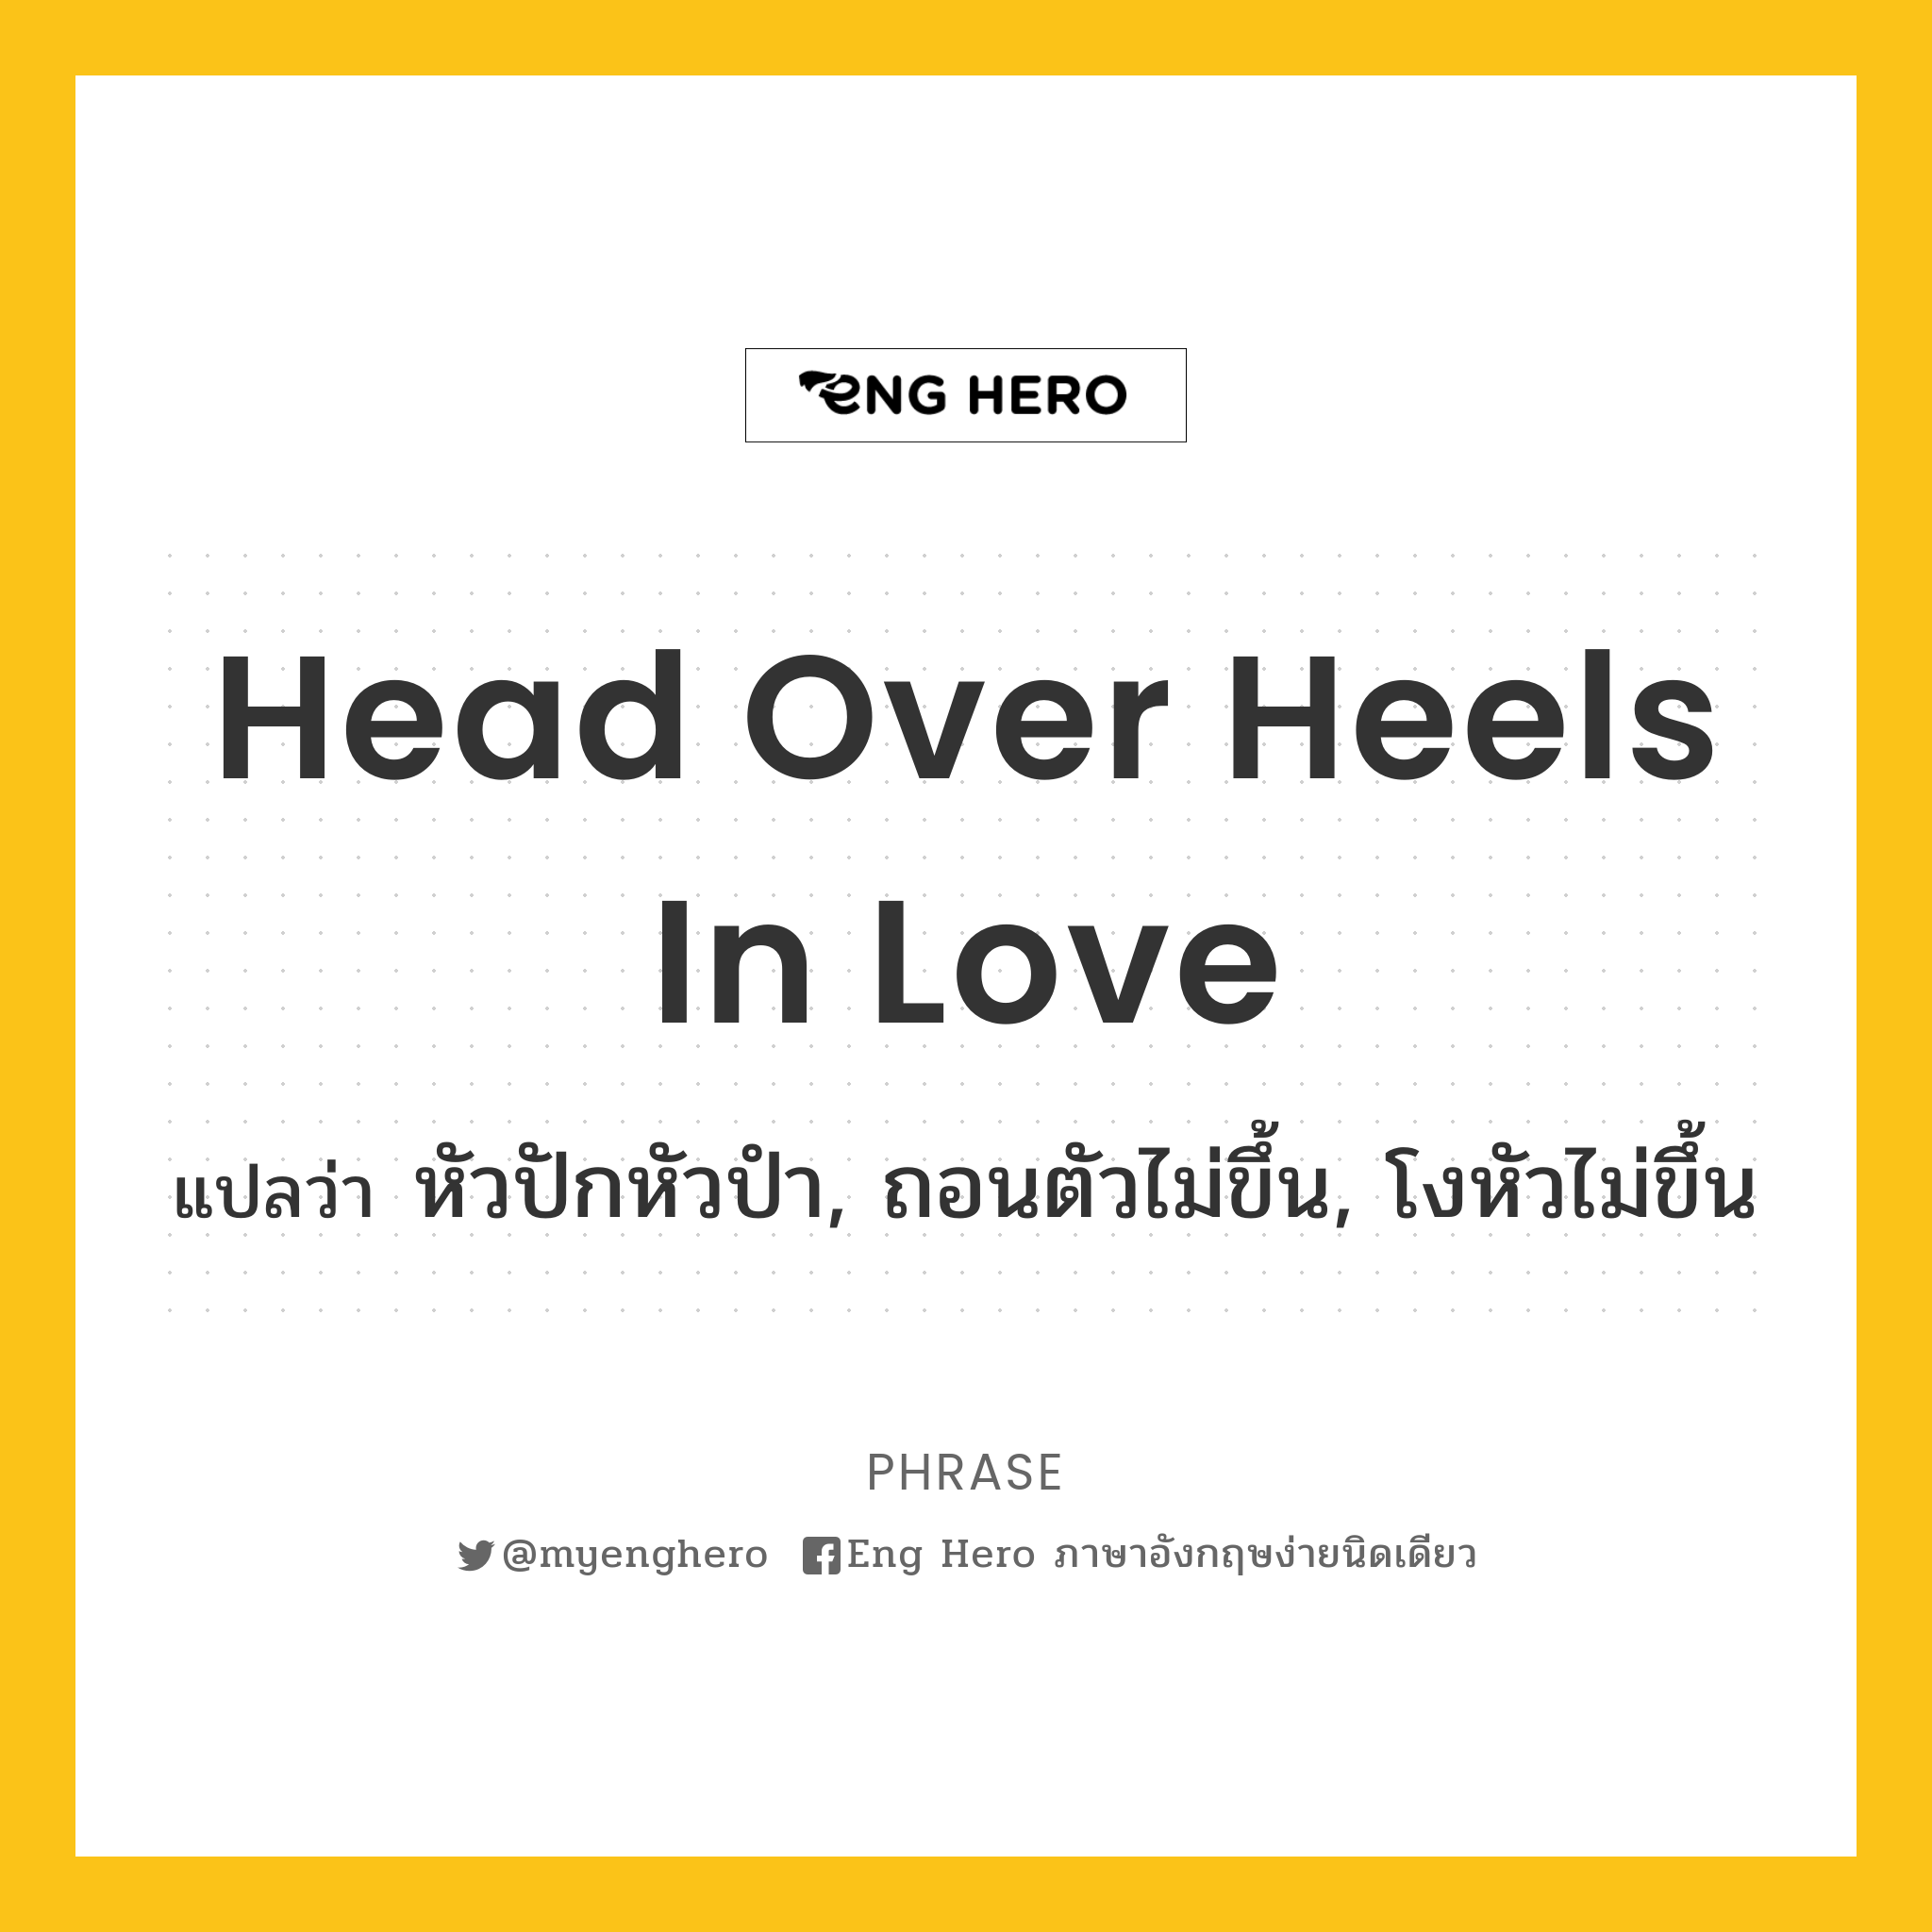 Head over heels in love